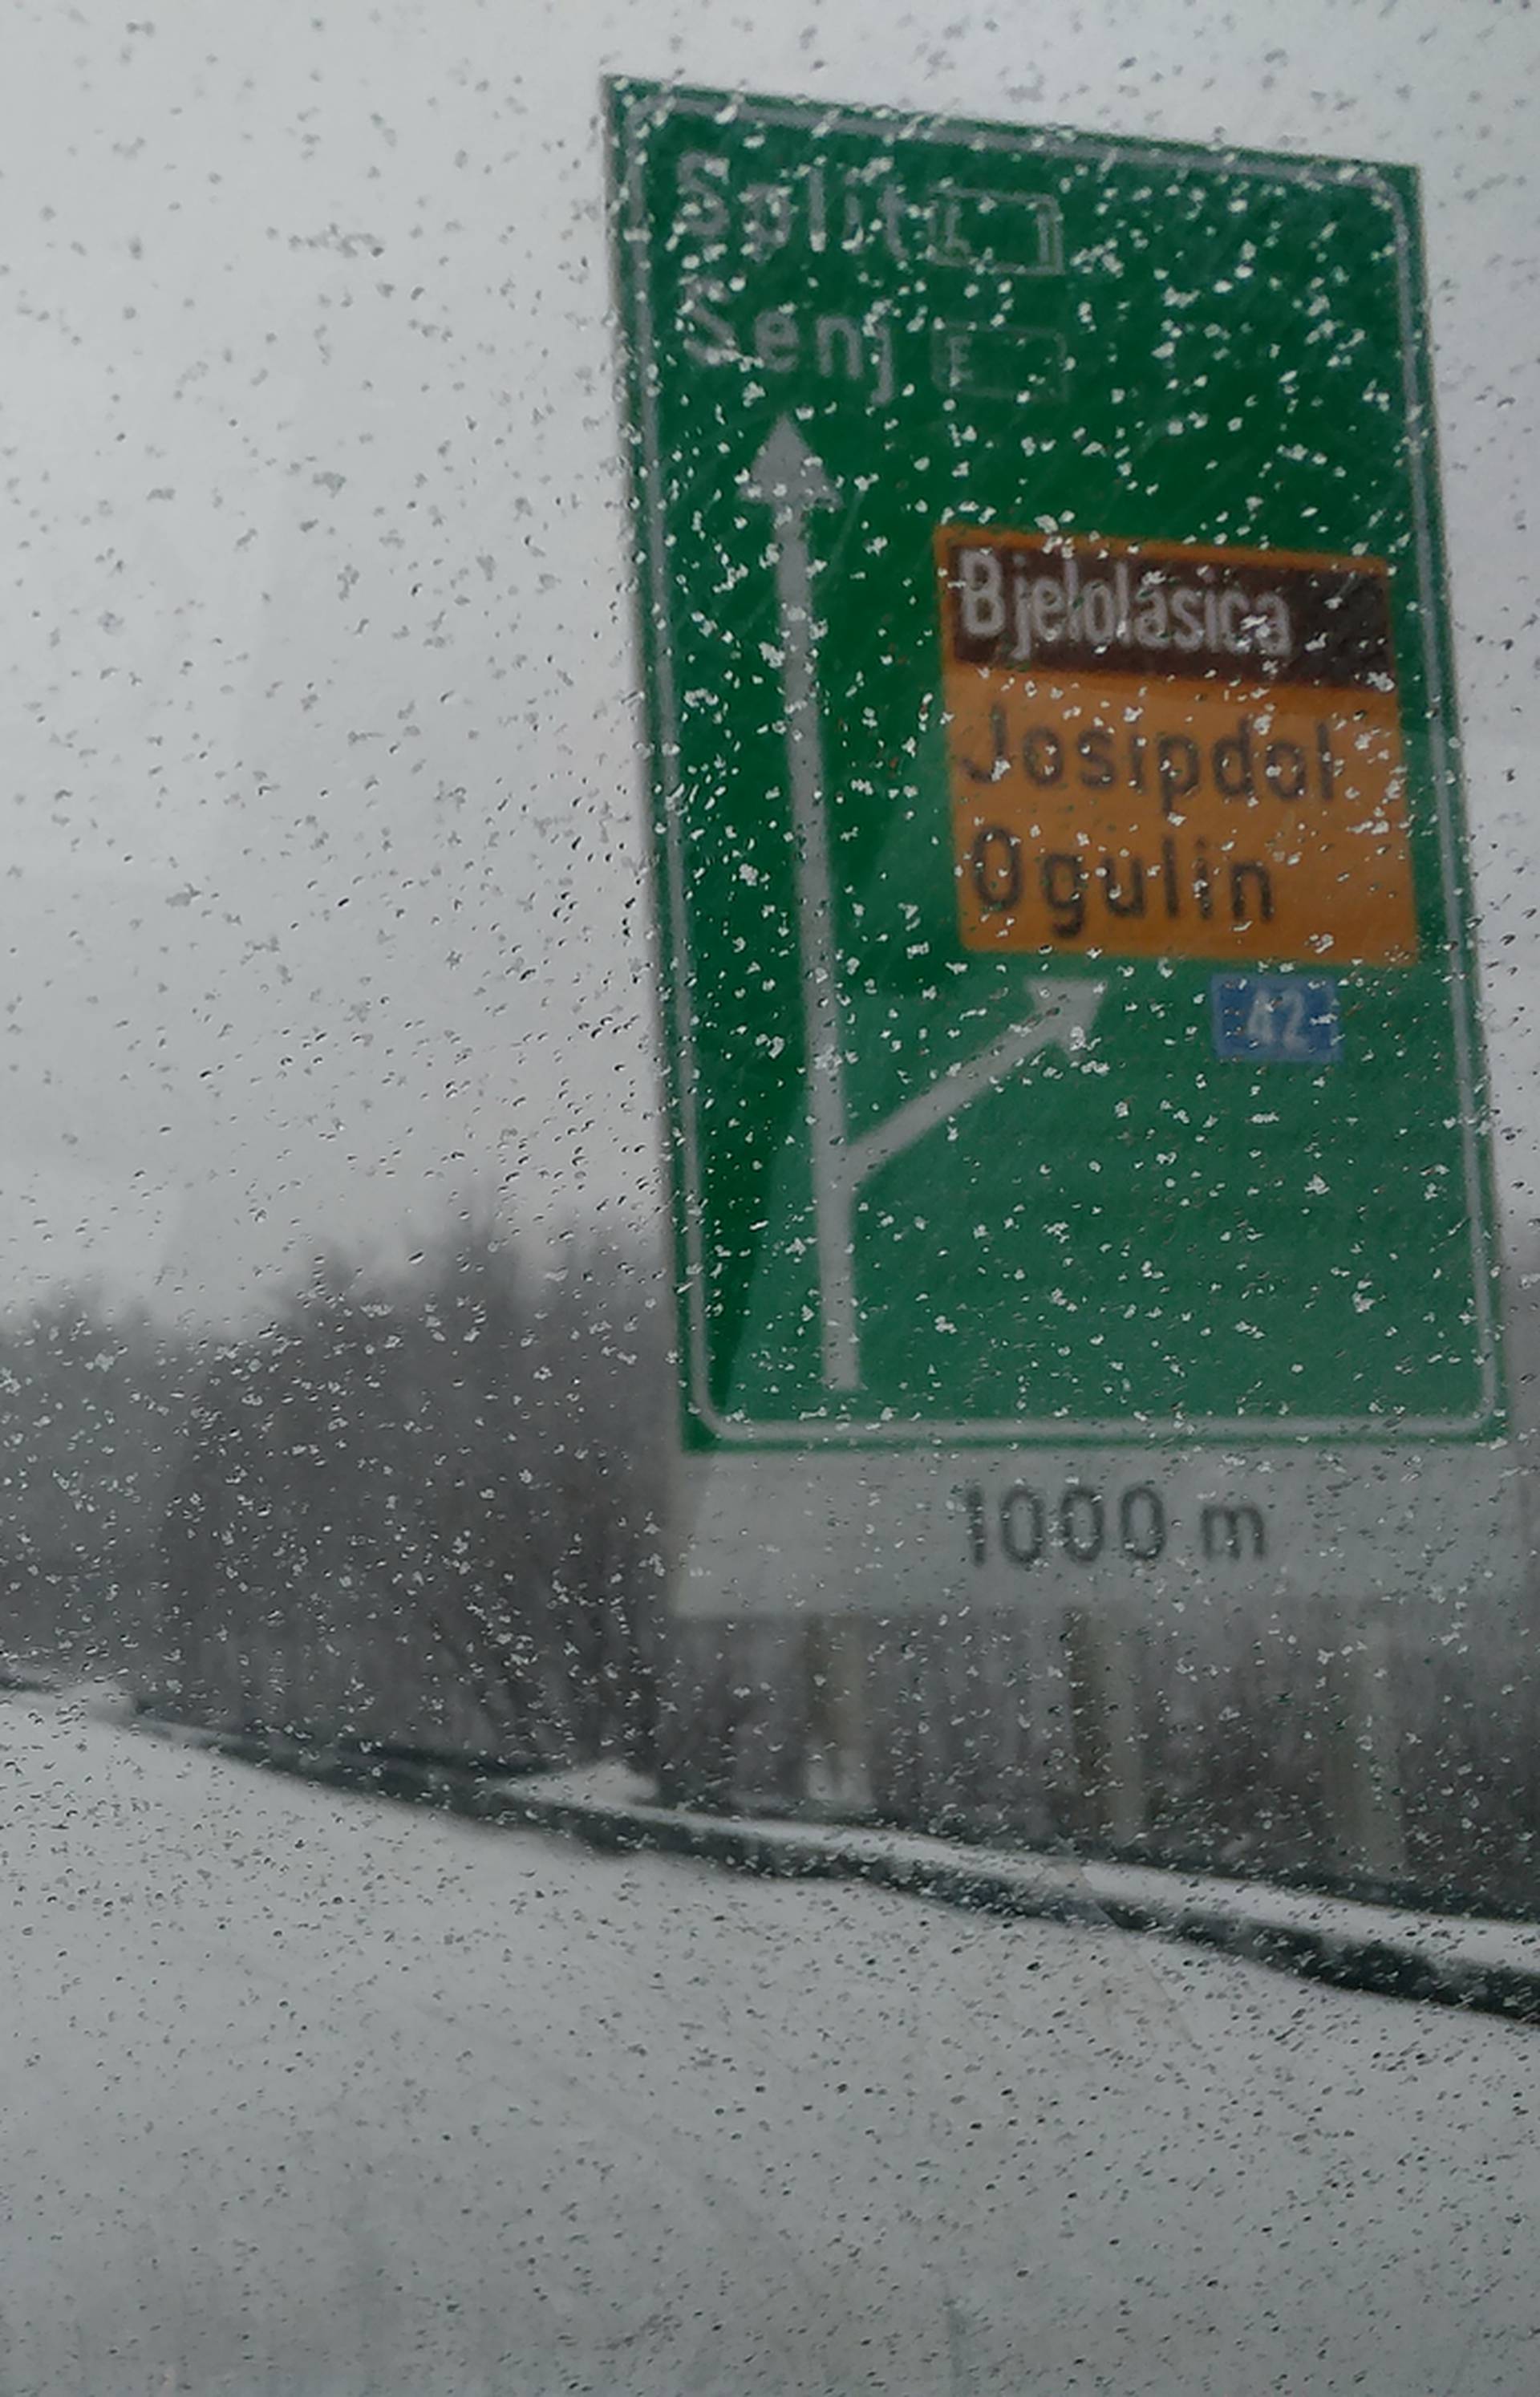 'Vrijeme je vrlo opasno': Bura i snijeg zatvorili su brojne ceste